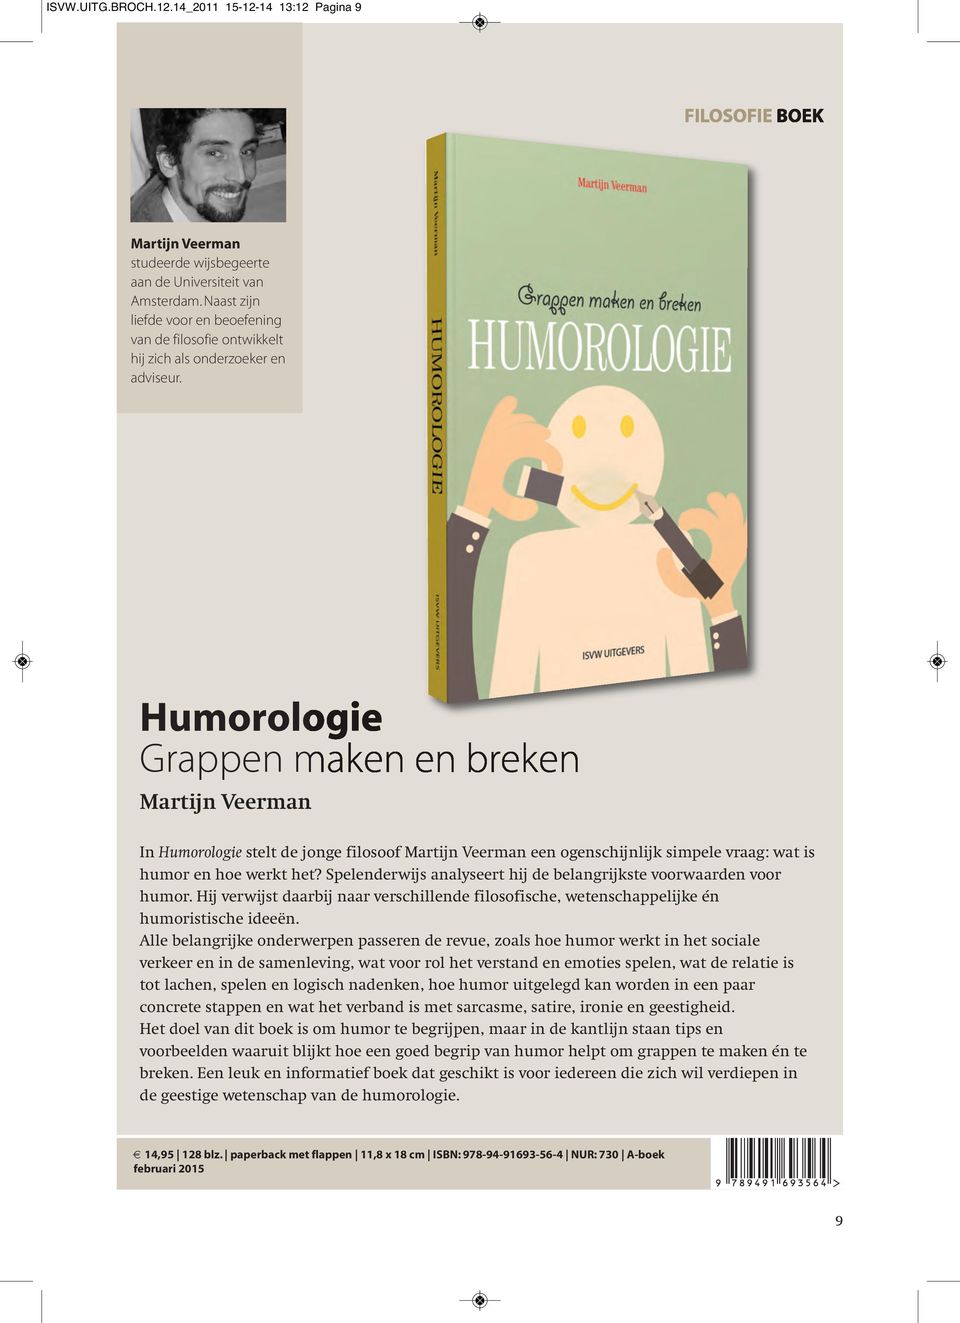 Humorologie Grappen maken en breken Martijn Veerman In Humorologie stelt de jonge filosoof Martijn Veerman een ogenschijnlijk simpele vraag: wat is humor en hoe werkt het?